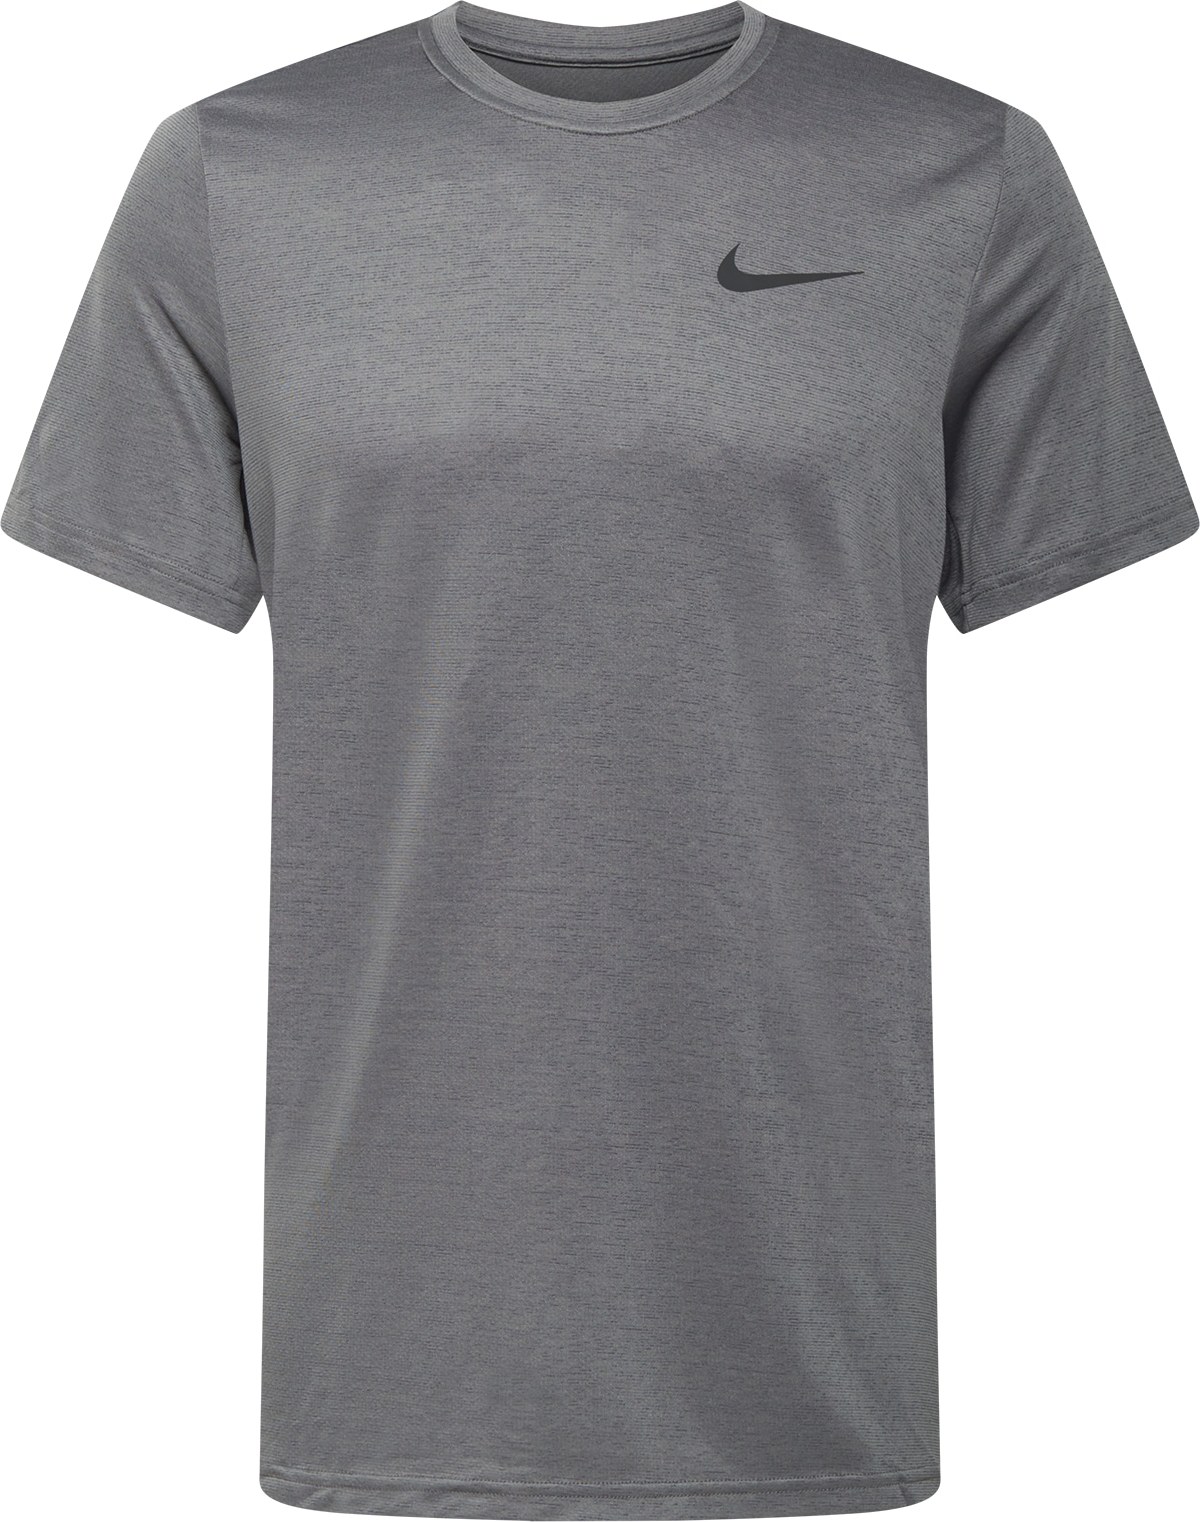 Funkční tričko 'Superset' Nike čedičová šedá / kámen